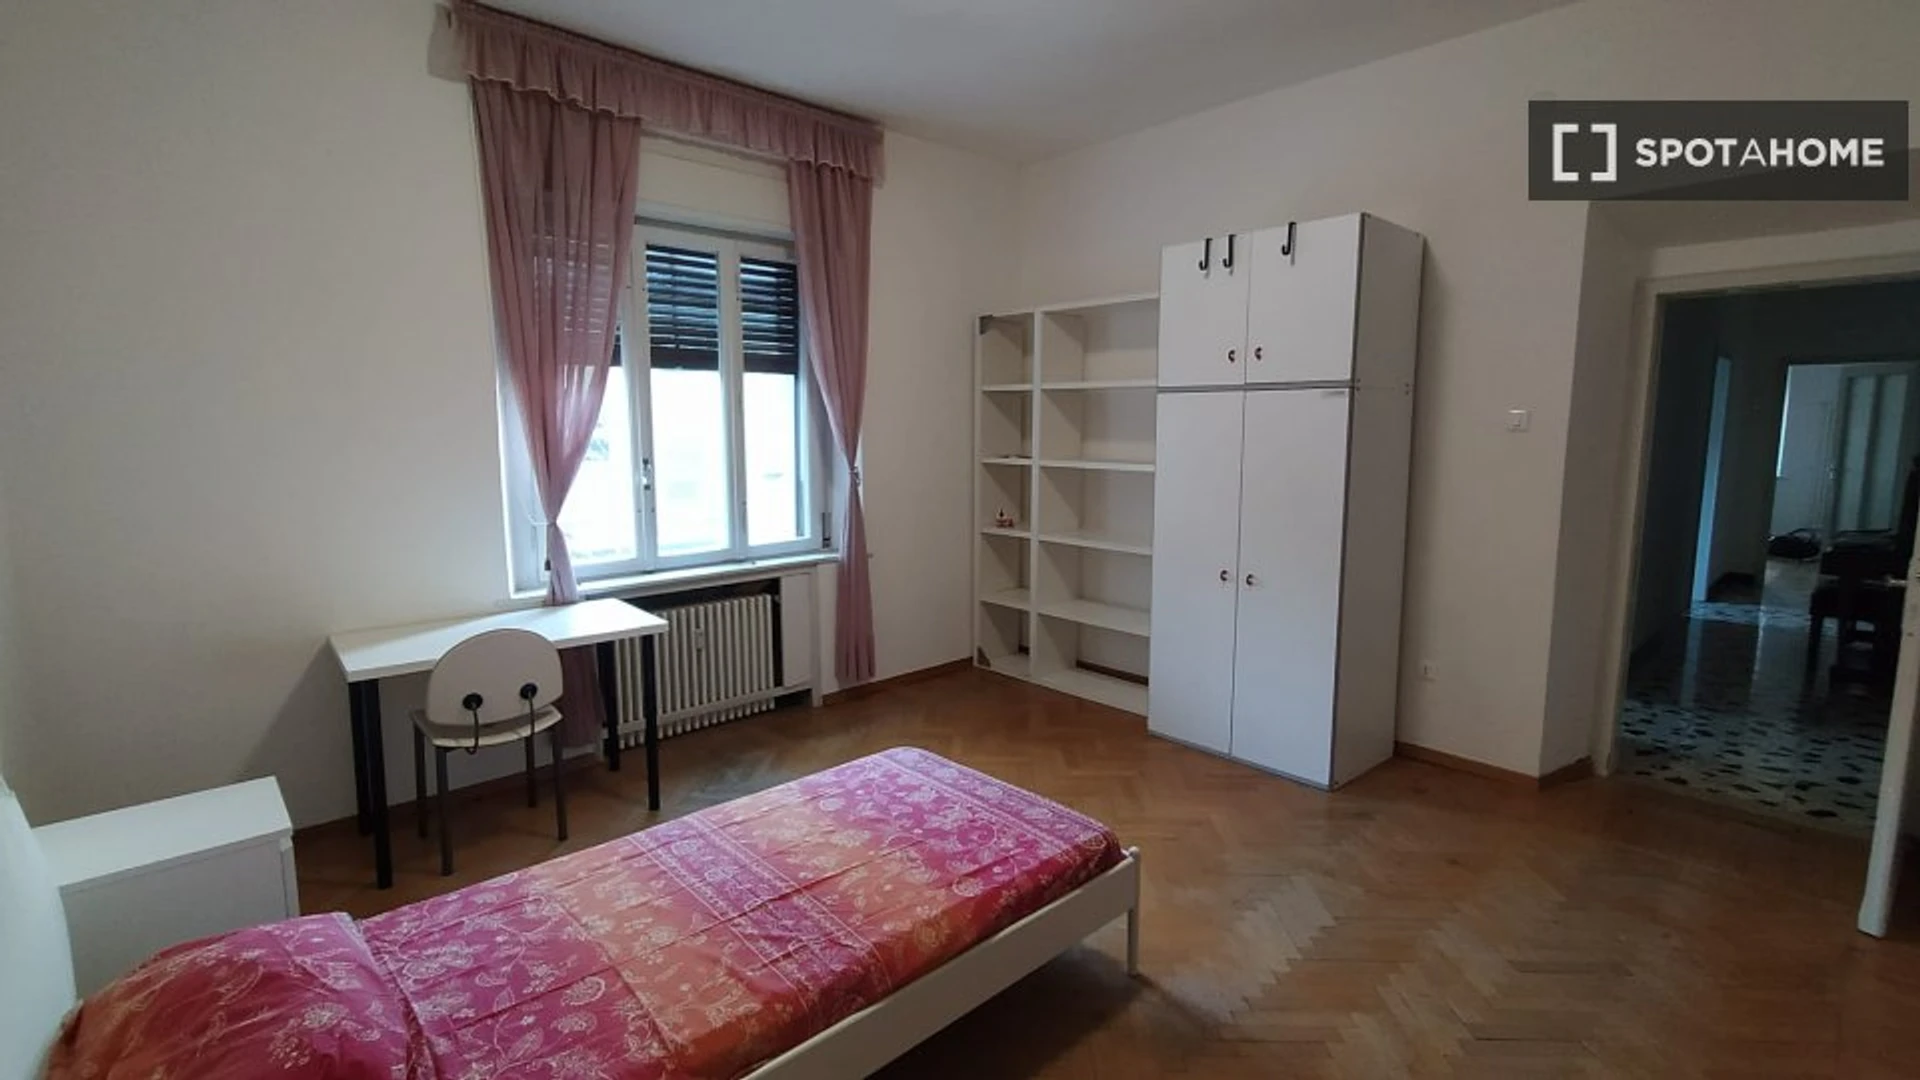 Trento de çift kişilik yataklı kiralık oda